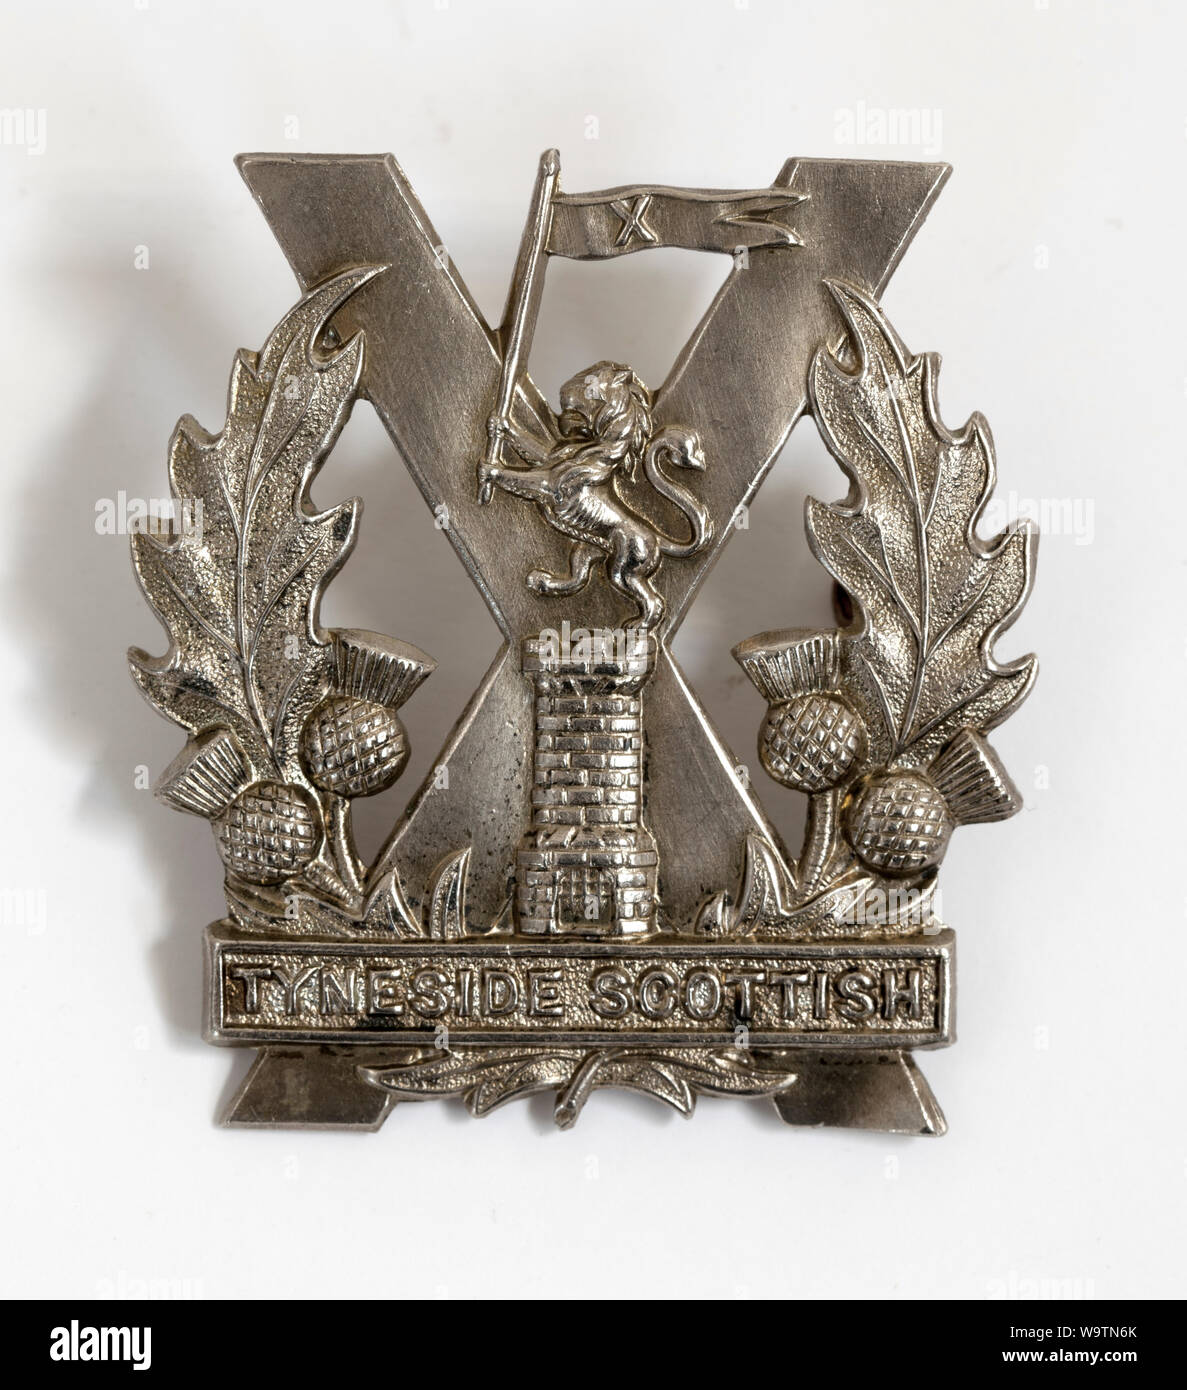 Insigne Militaire Armée britannique - Tyneside Scottish Regiment Banque D'Images